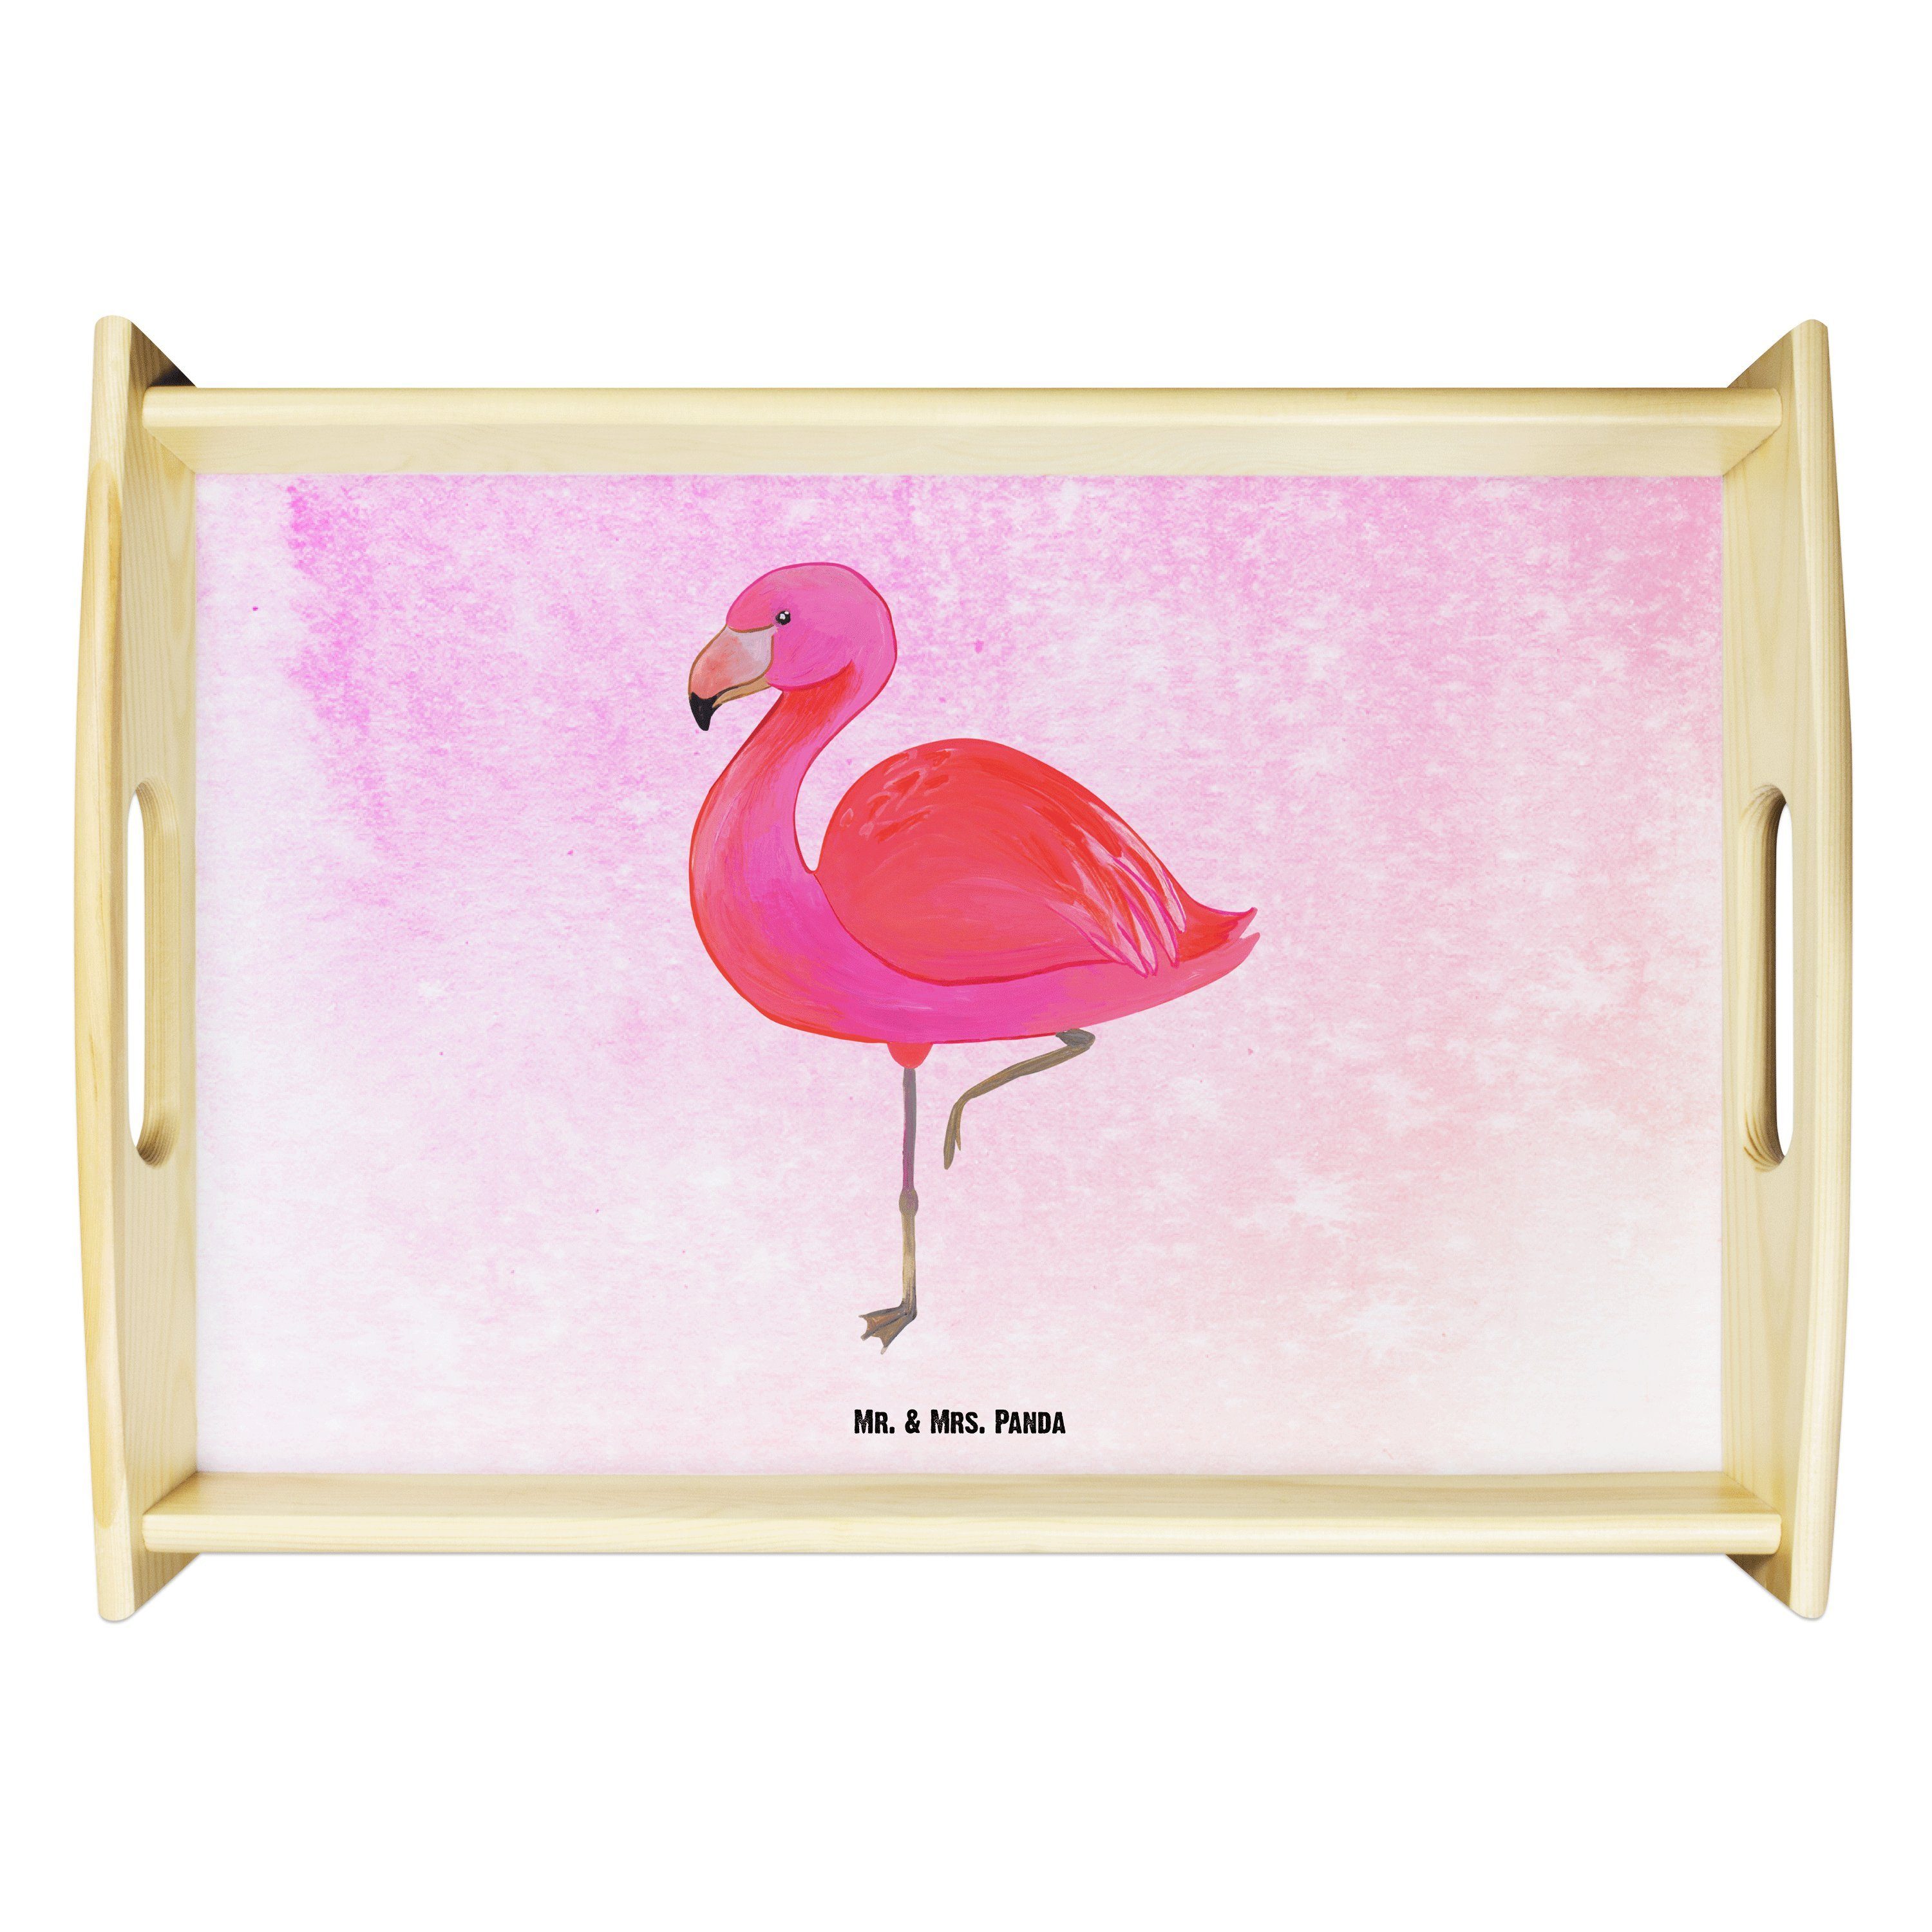 Mr. & Mrs. Panda Tablett Flamingo classic - Aquarell Pink - Geschenk, Dekotablett, Freundin, K, Echtholz lasiert, (1-tlg)